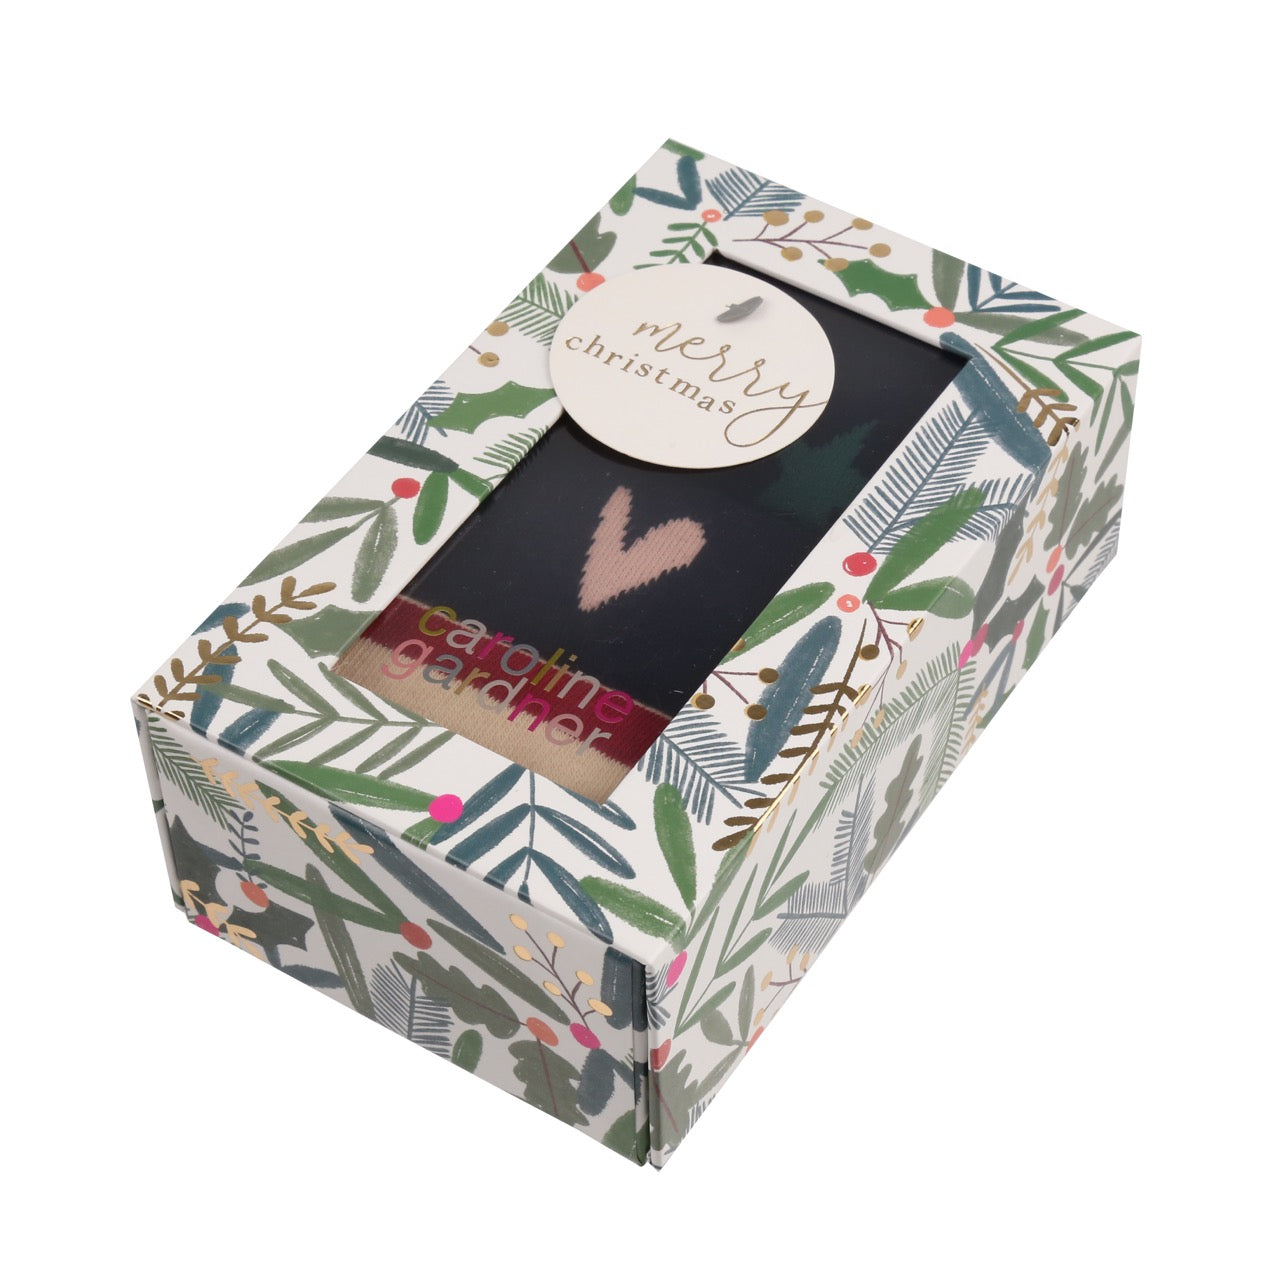 CAROLINE GARDNER 3PK Christmas Gift Boxed Cotton Socks - Women's